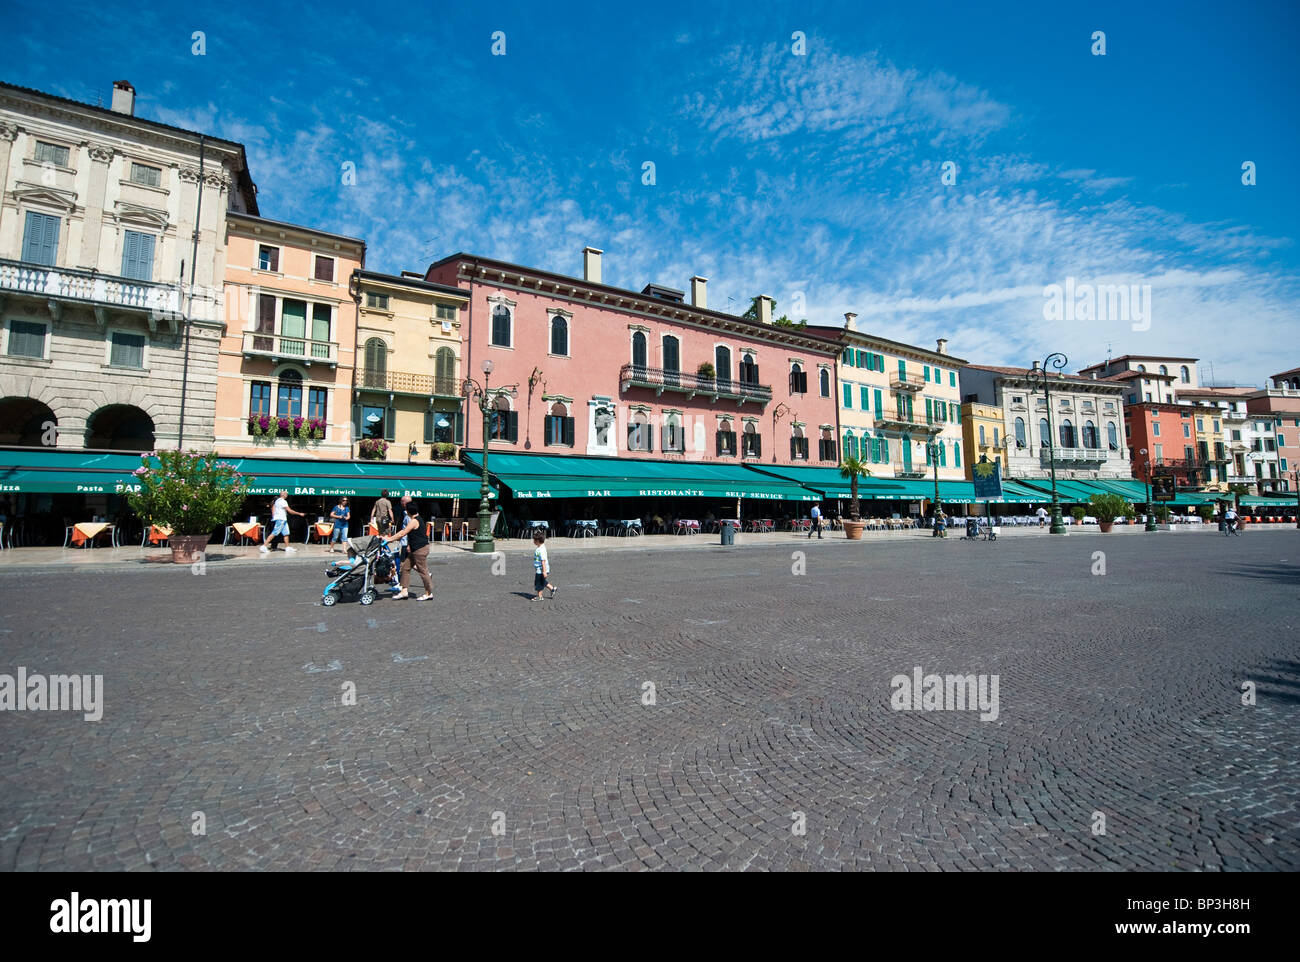 Piazza Bra  Verona Italy Stock Photo